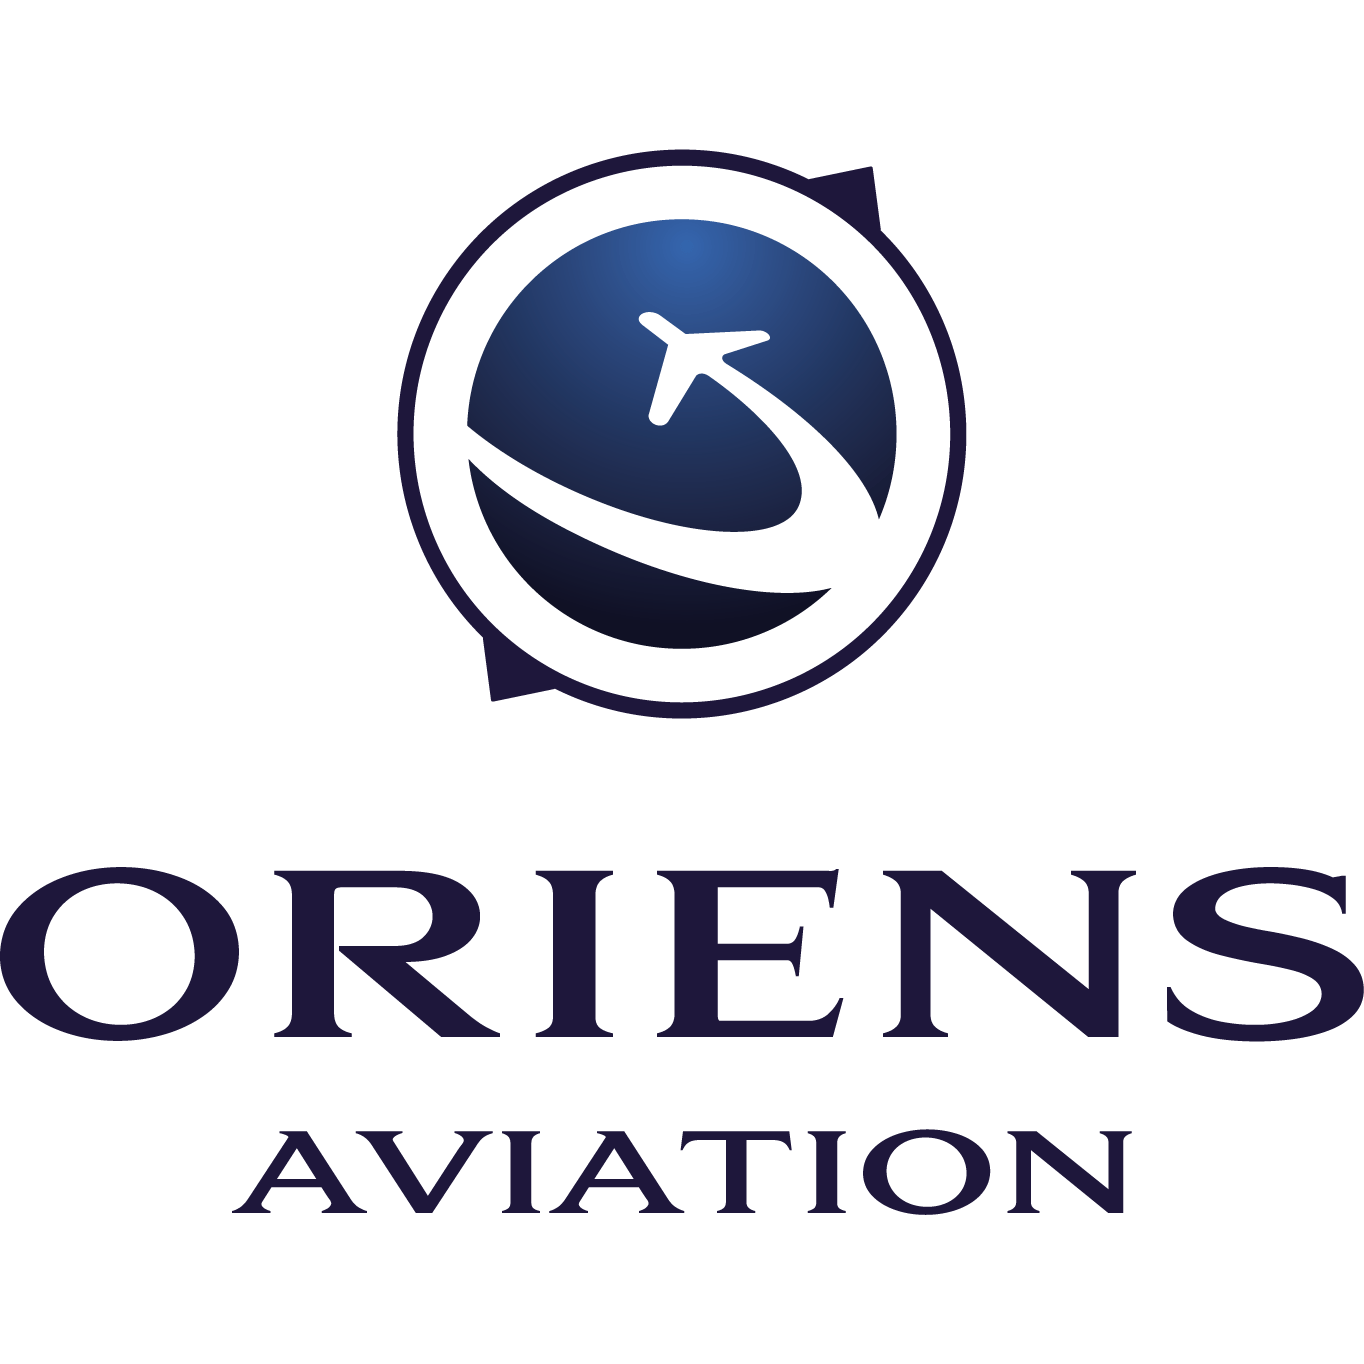 Oriens Aviation Skylegs Partner